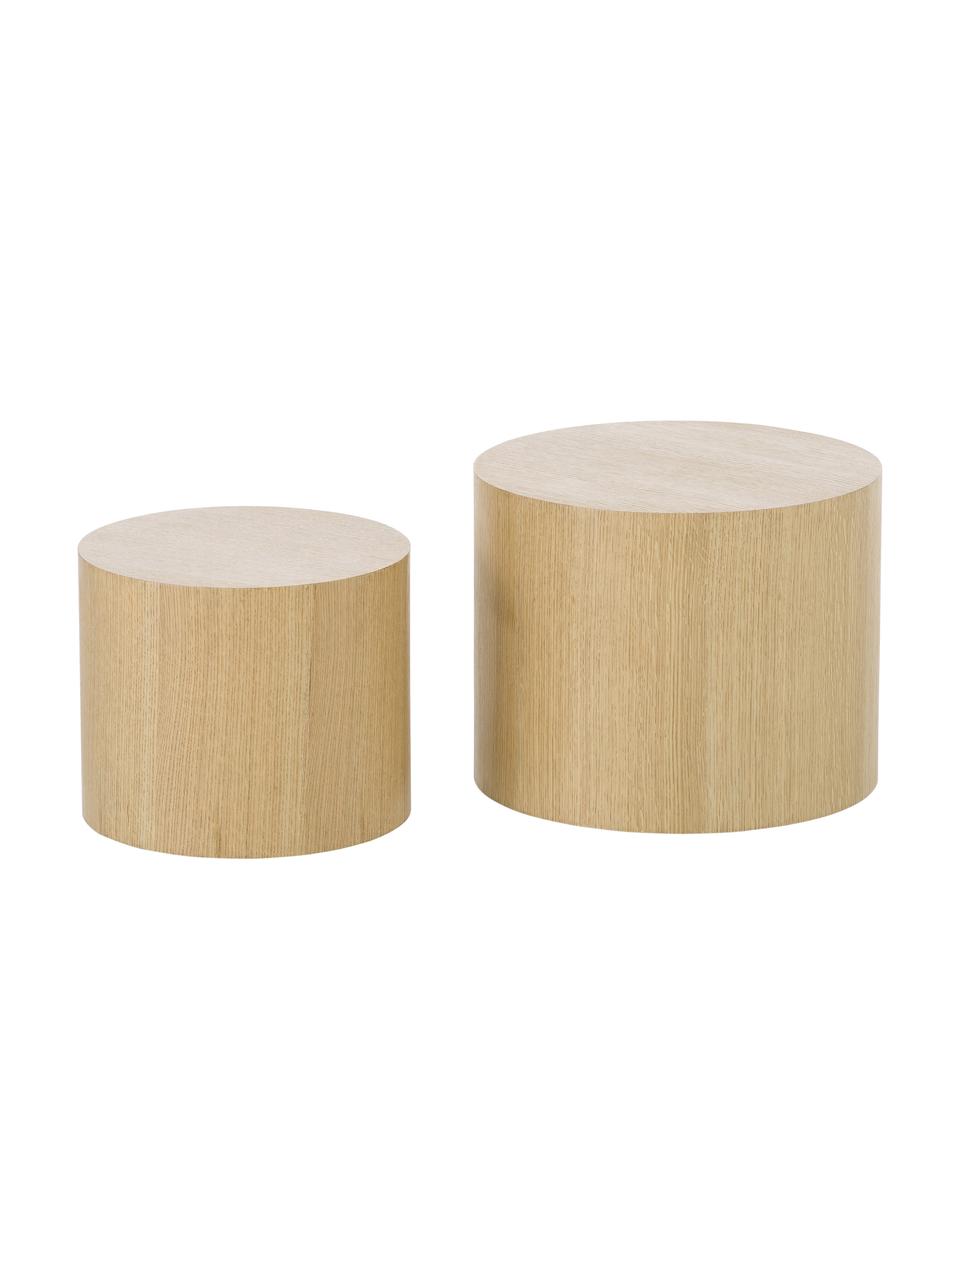 Table basse ronde en bois Dan, 2 élém., MDF (panneau en fibres de bois à densité moyenne) avec placage en bois de chêne, Bois clair, Lot de différentes tailles